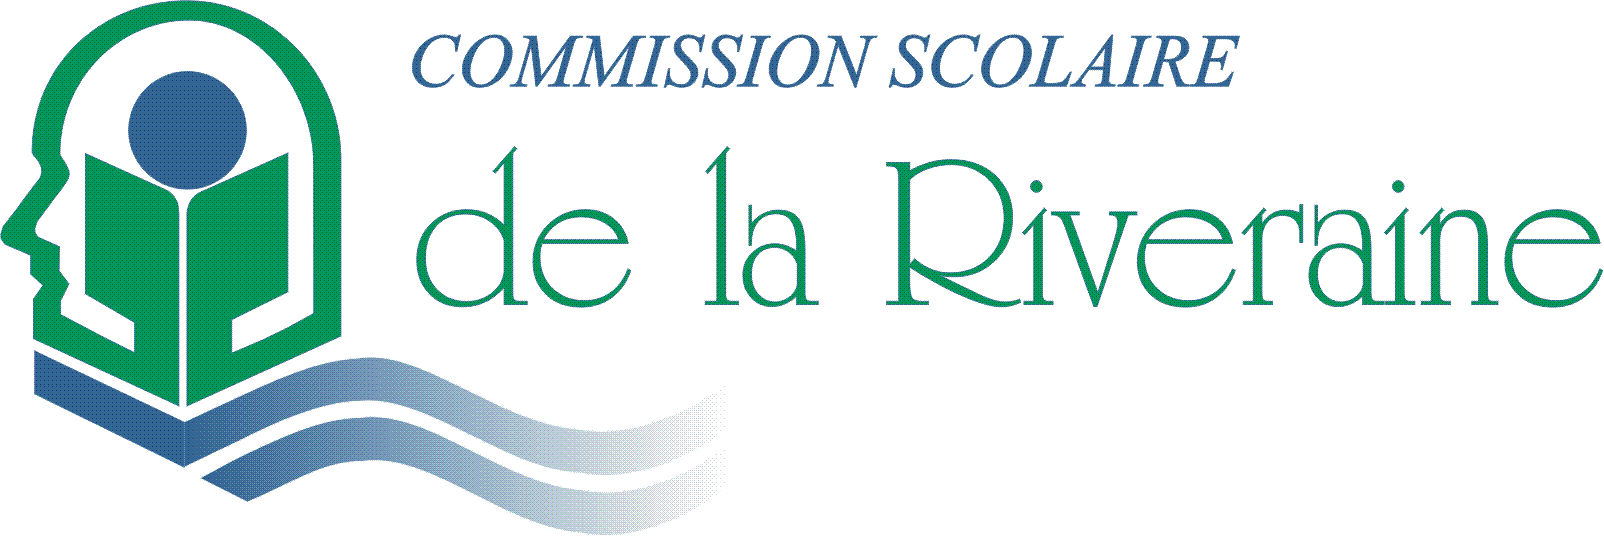 Commission scolaire de la Riveraine